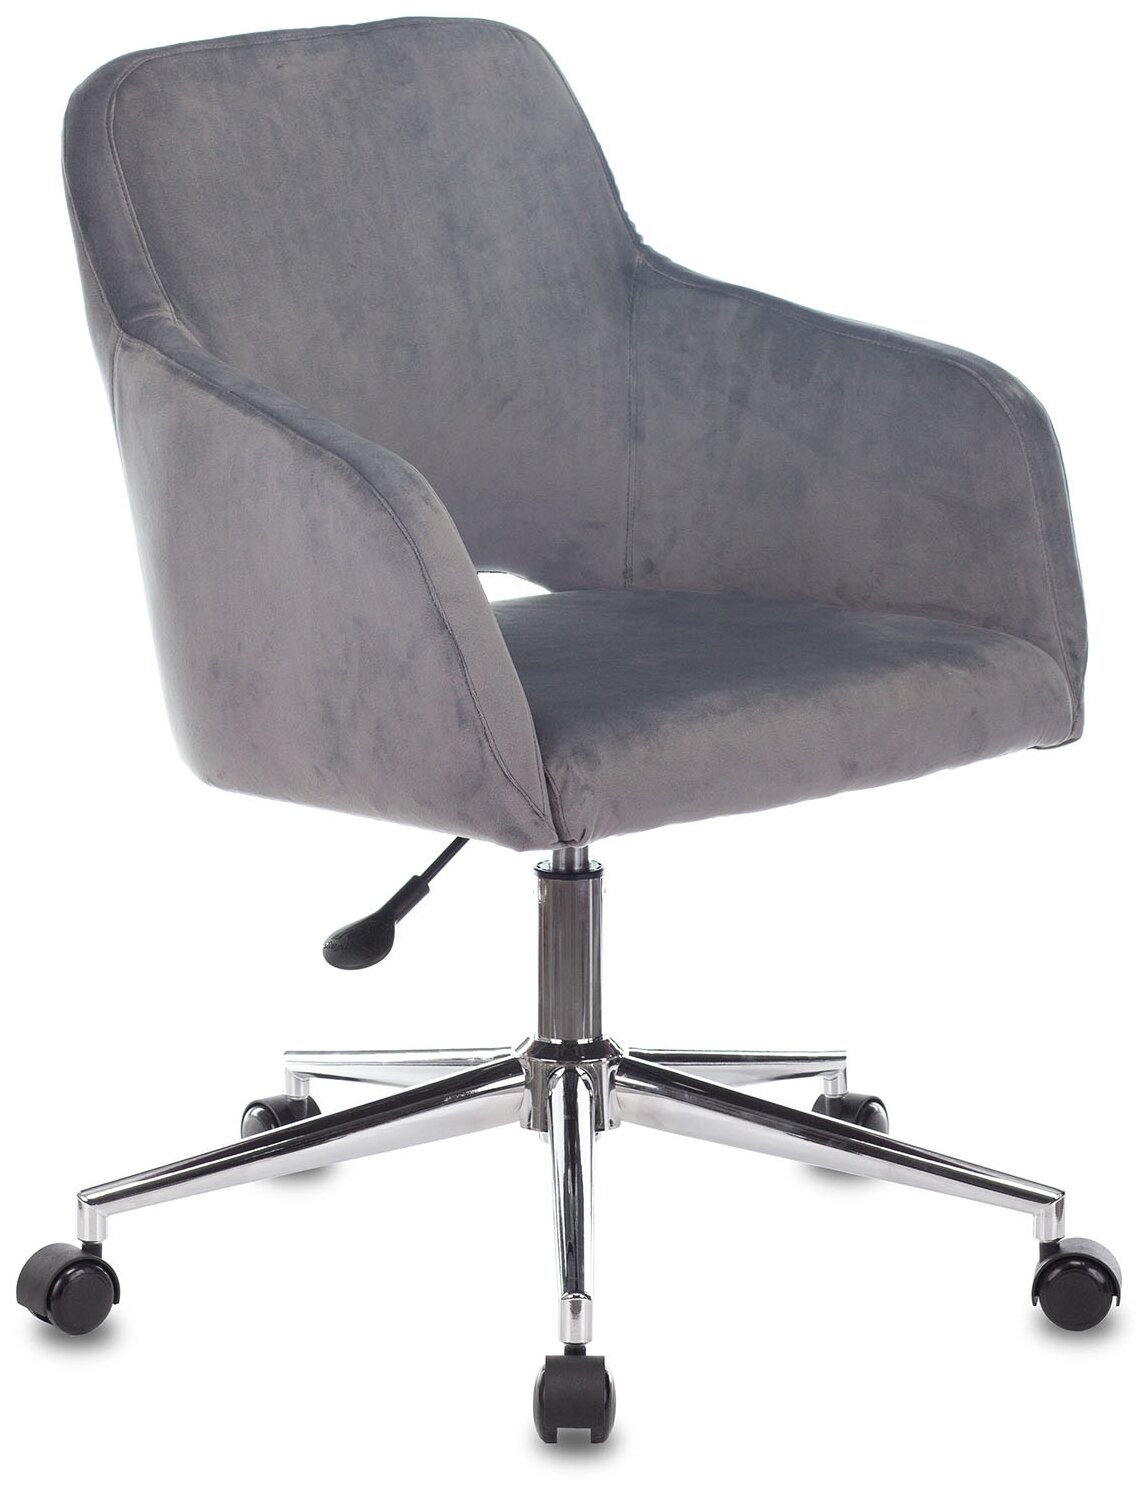 Кресло компьютерное CH-380SL серая жемчужина, ткань / Офисное кресло для оператора, персонала, сотрудника, для дома